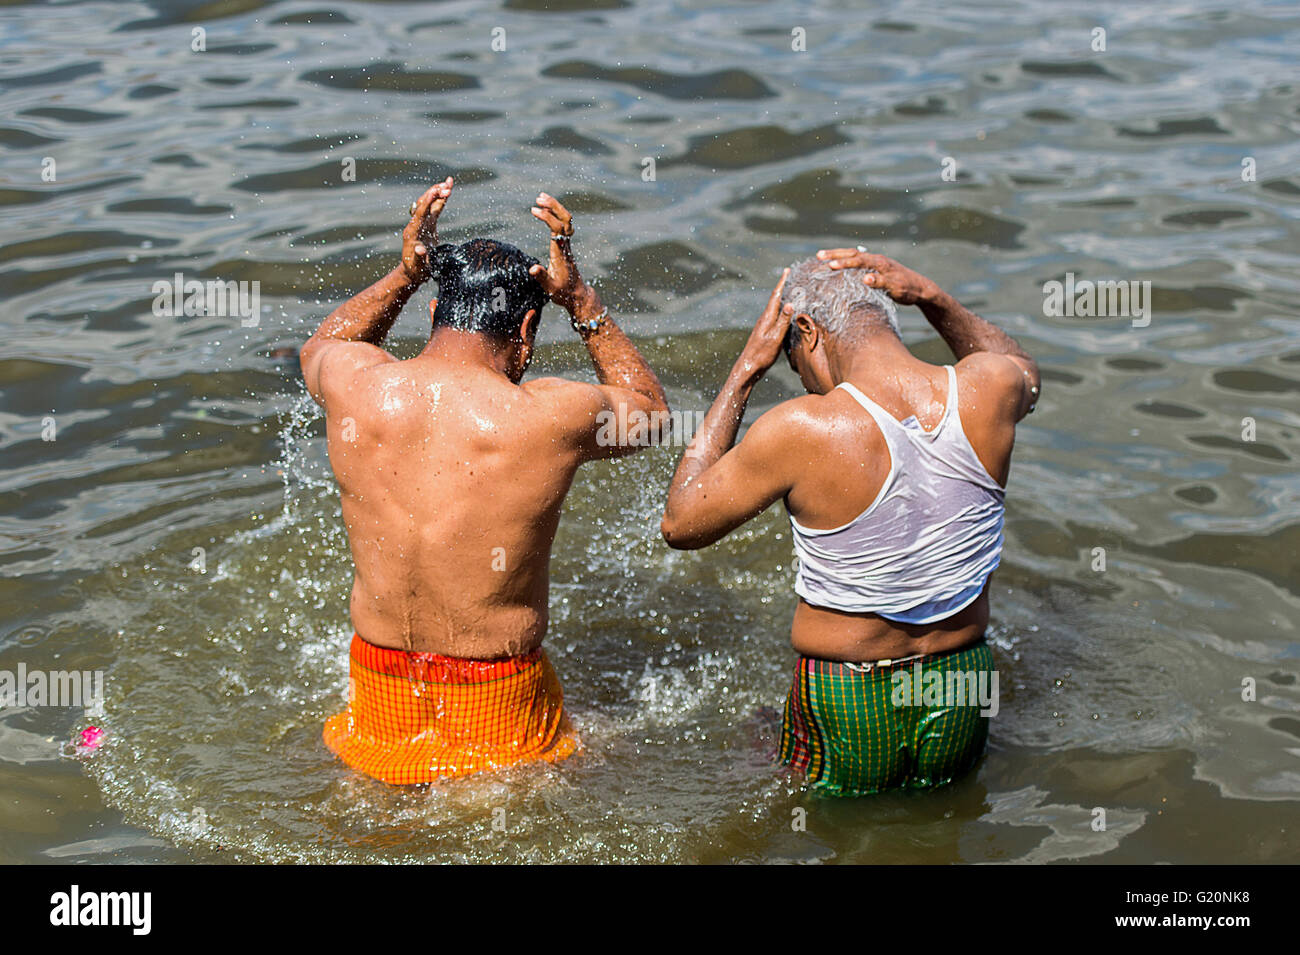 Un peuple indien dans Ana Sagar Lake à Ajmer, Inde après la prière du matin. Banque D'Images